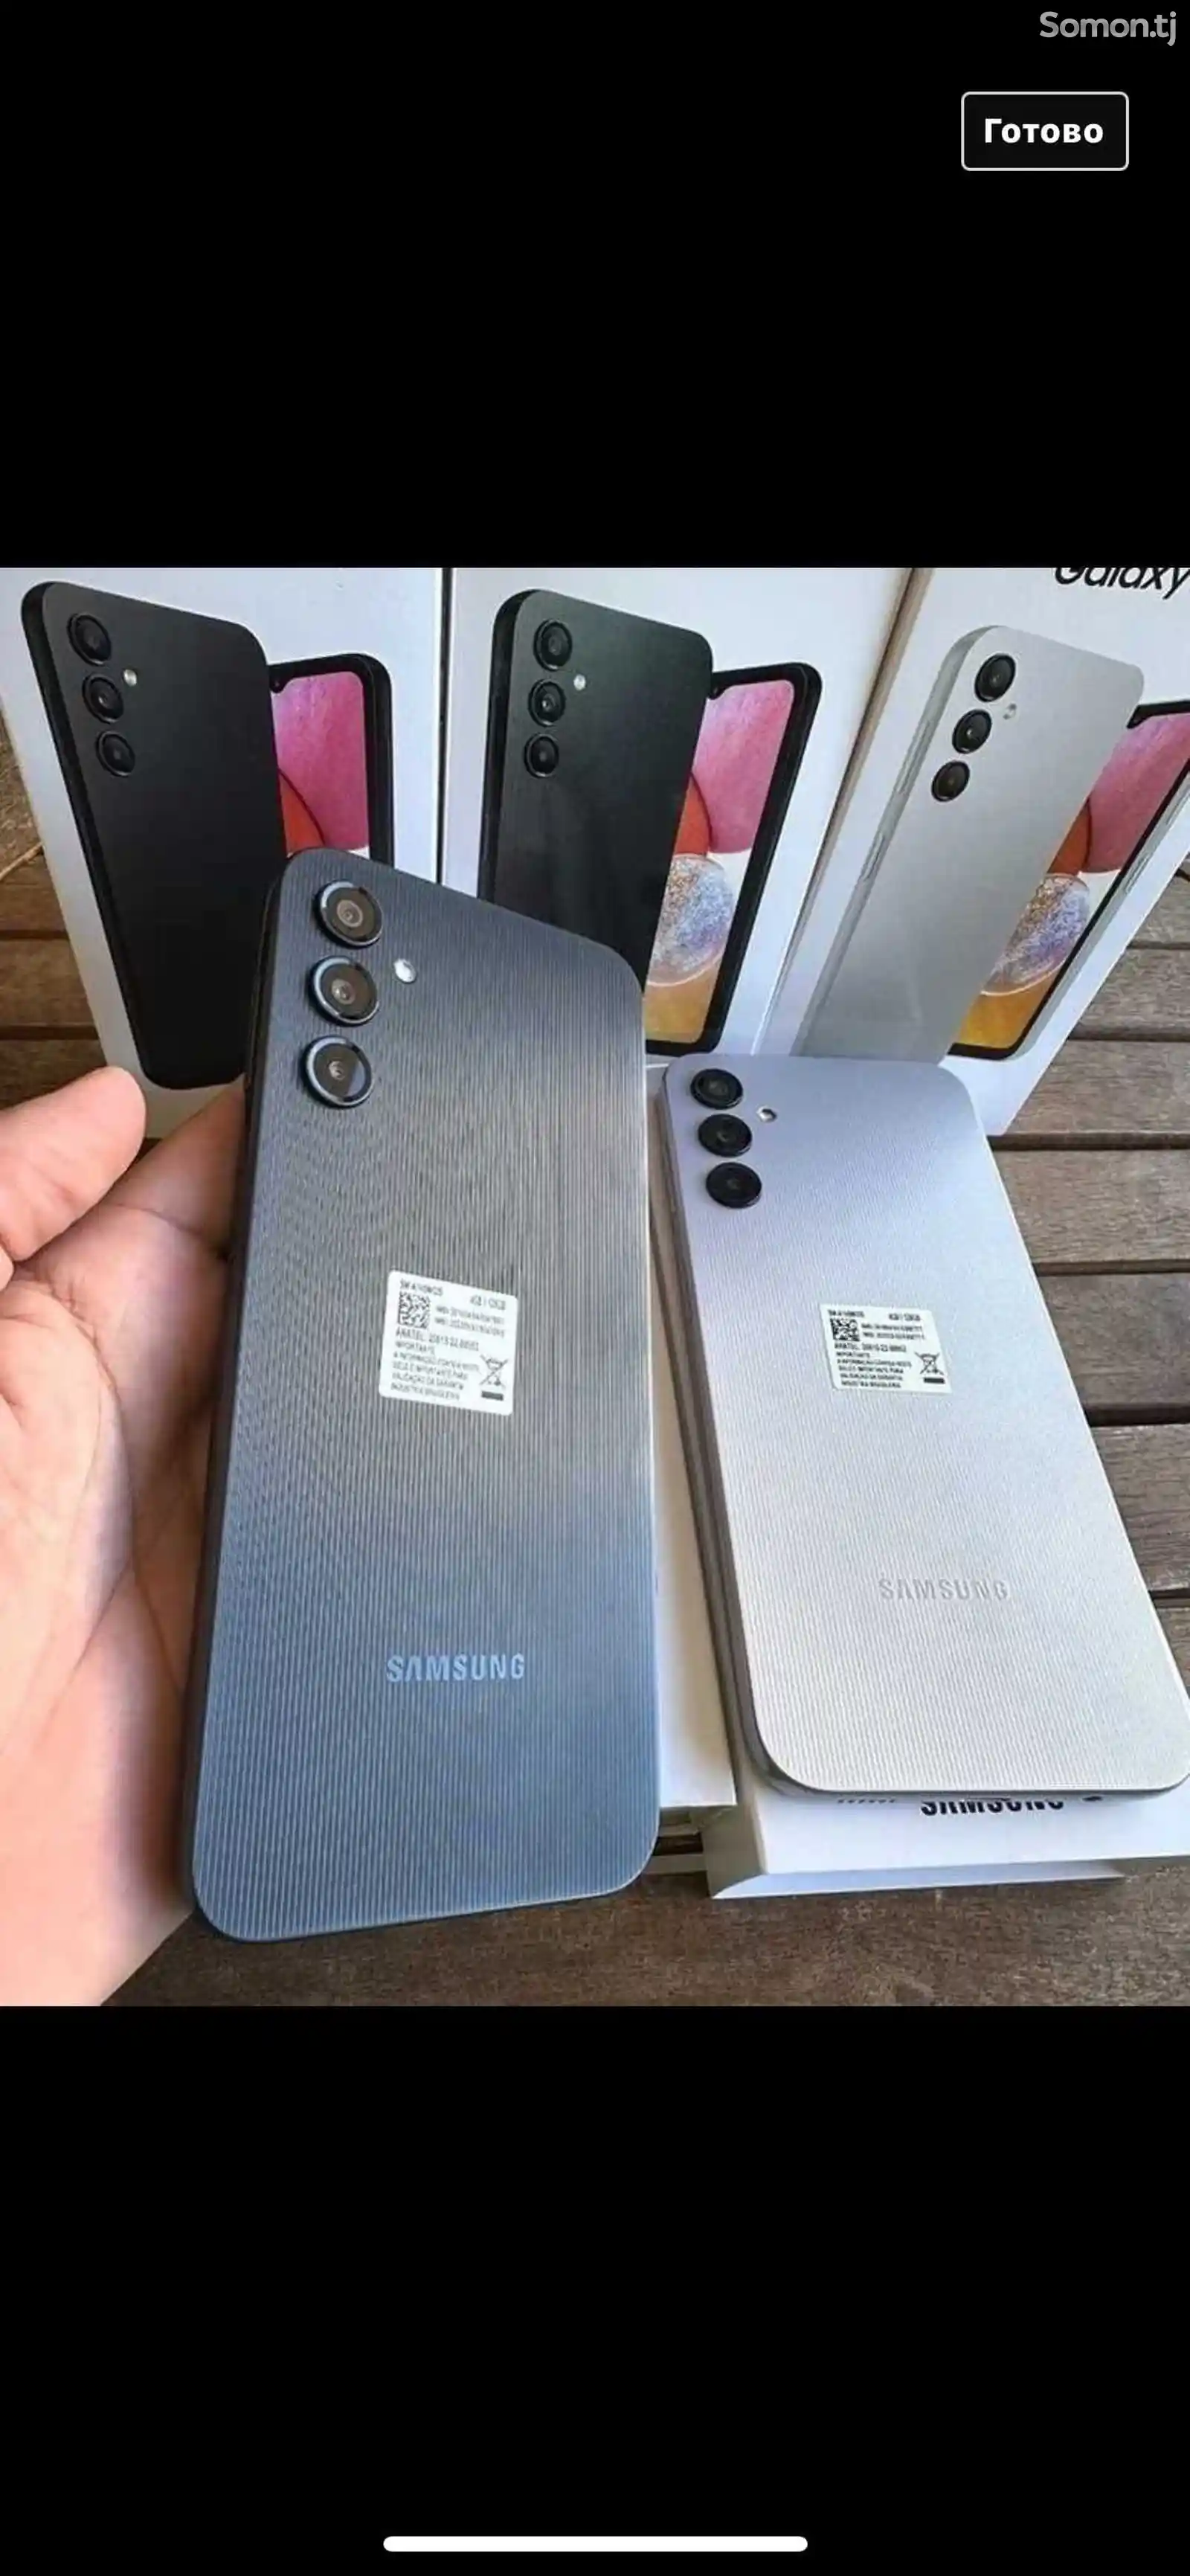 Samsung Galaxy A14-6